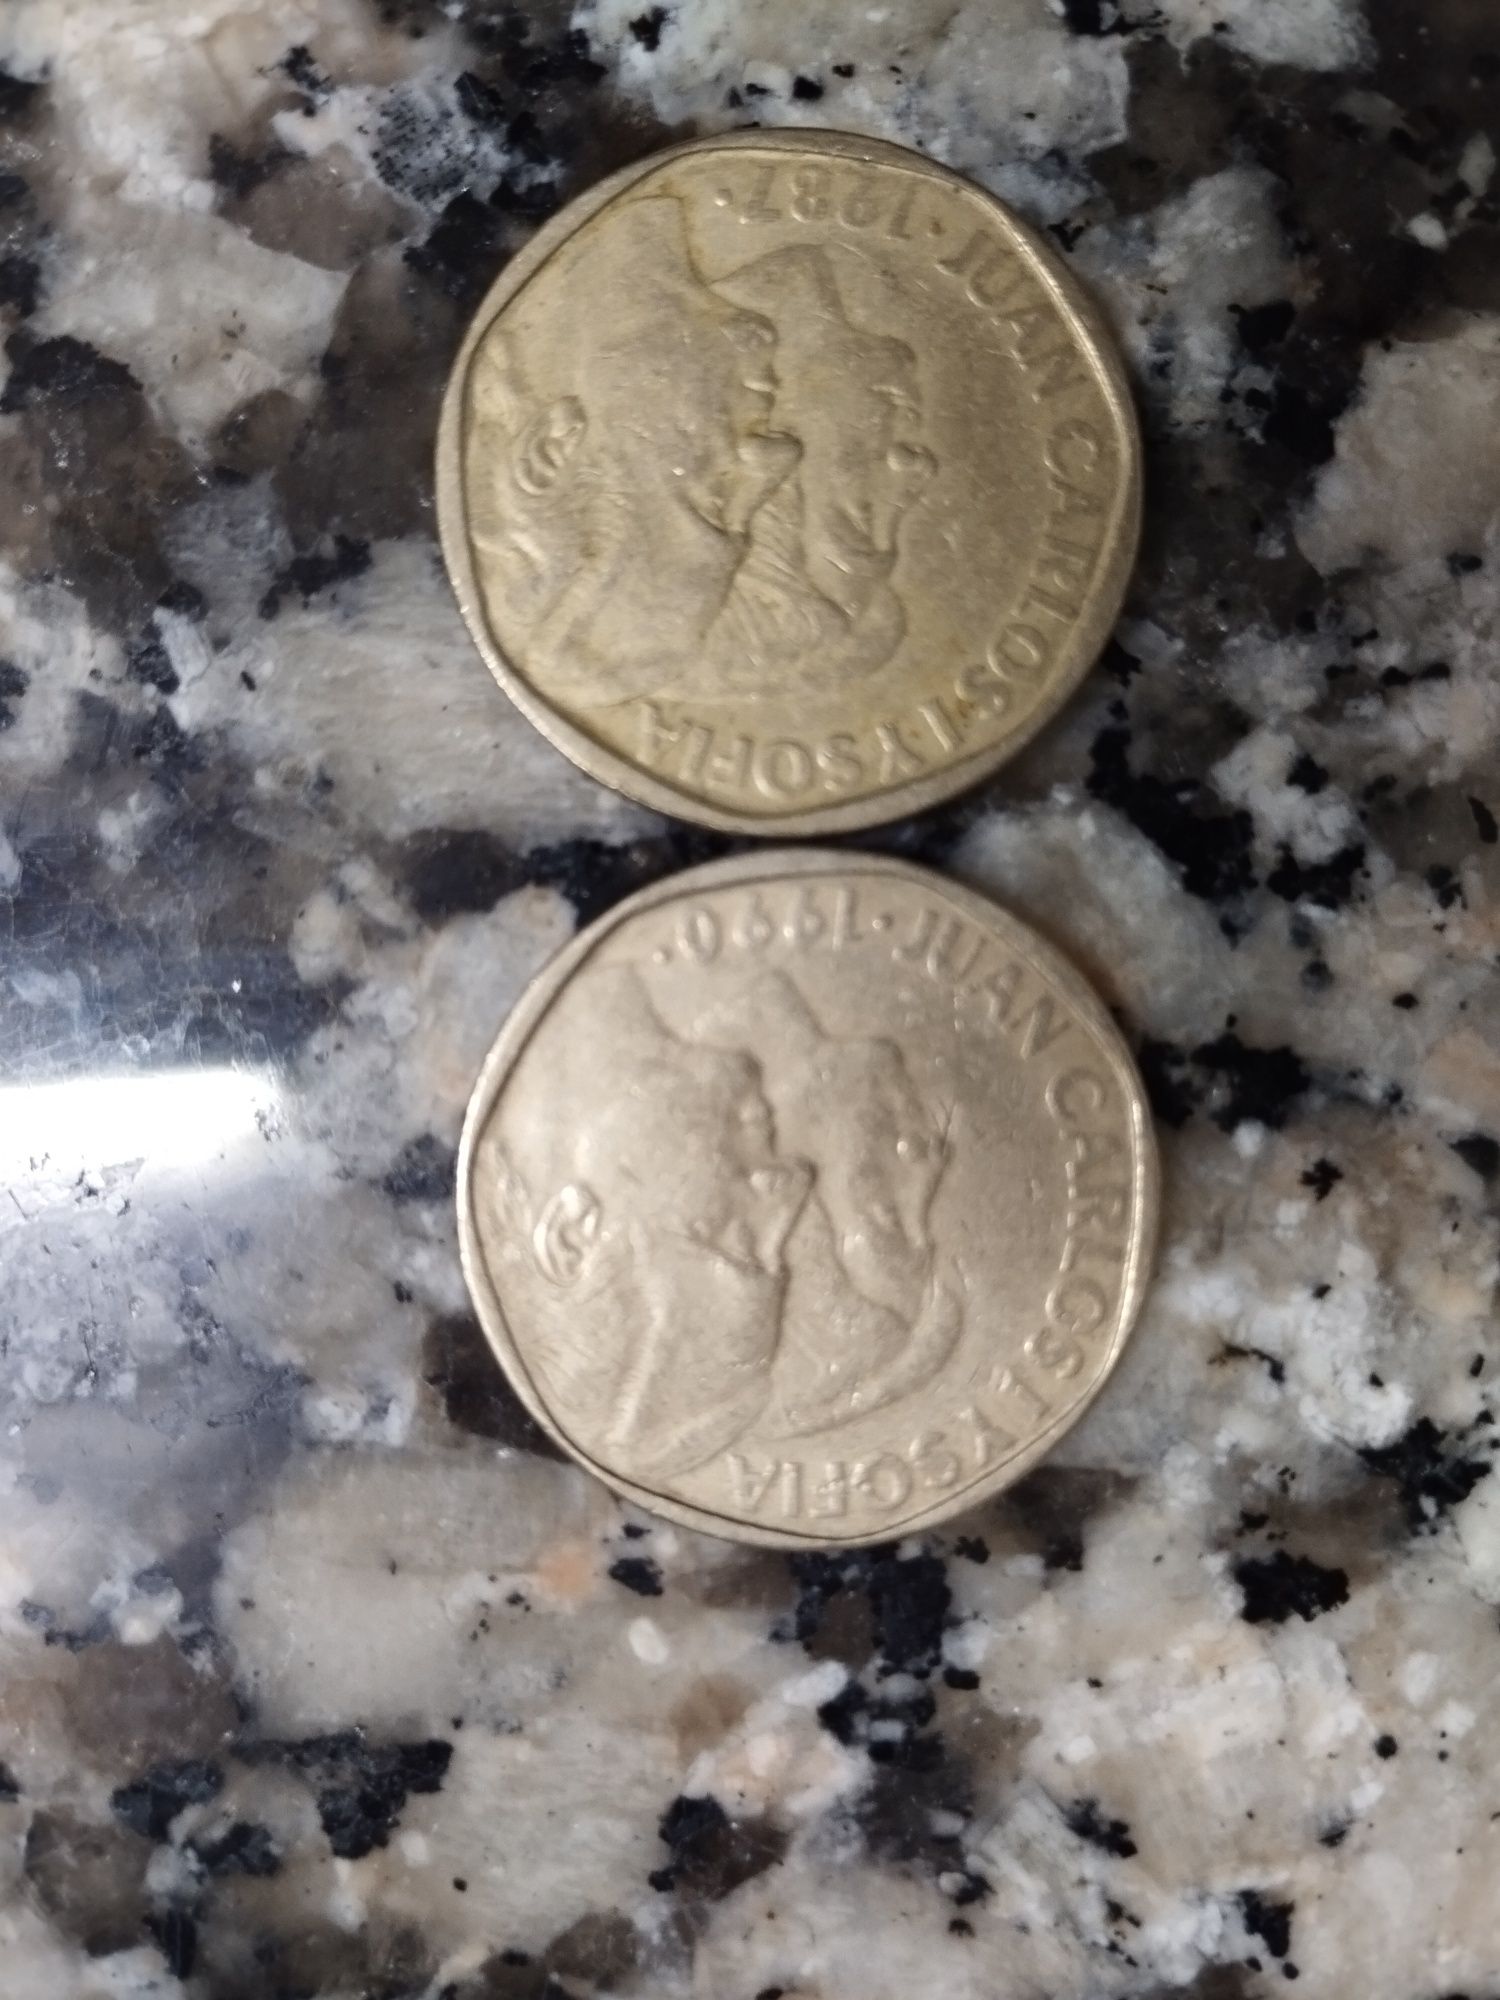 Vendo várias moedas antigas e raras.